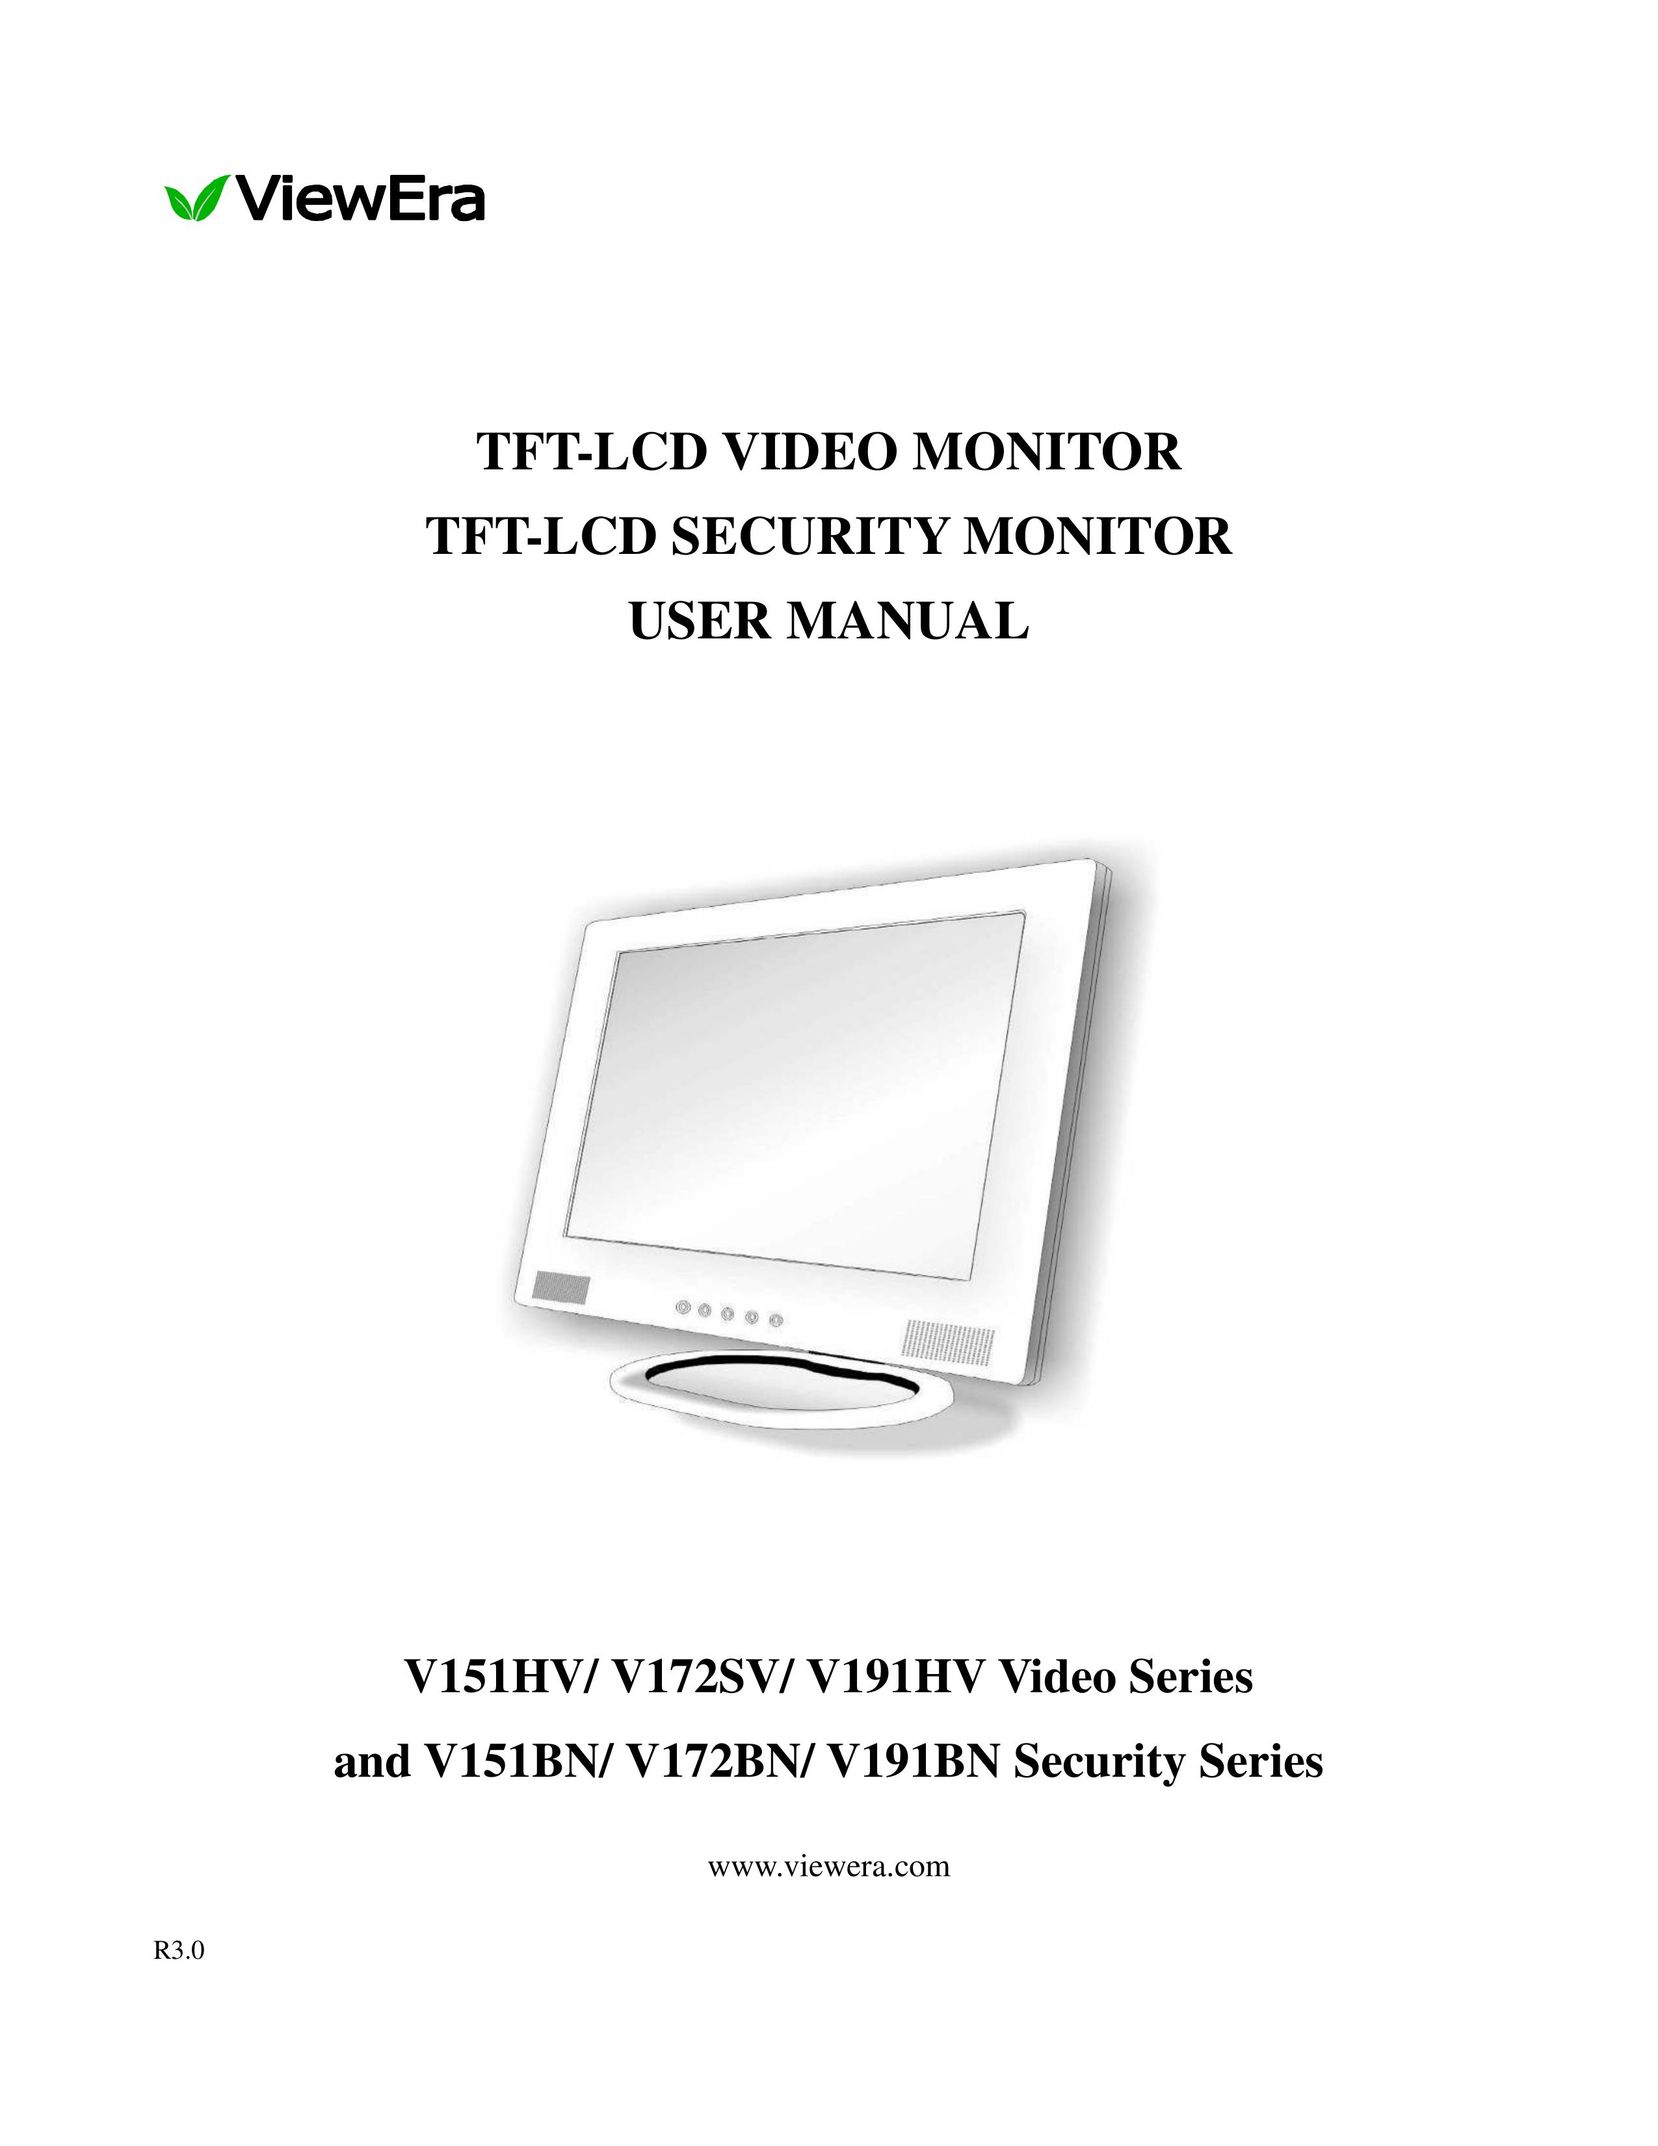 ViewEra V151HV Computer Monitor User Manual